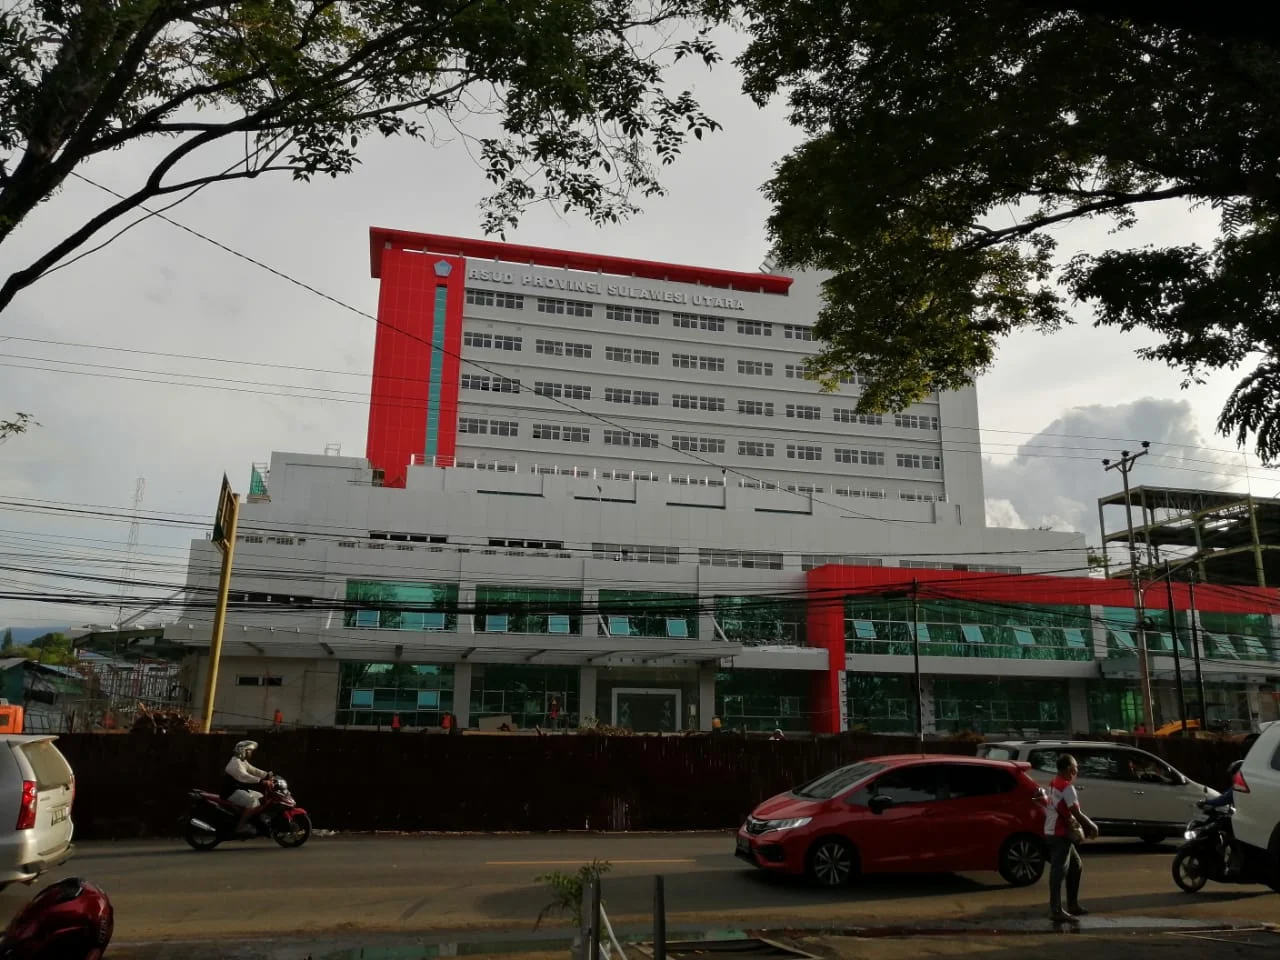 Gubernur Olly dan Wagub Steven Optimalkan Pelayanan Kesehatan, Lima Rumah Sakit Baru Hadir di Sulut